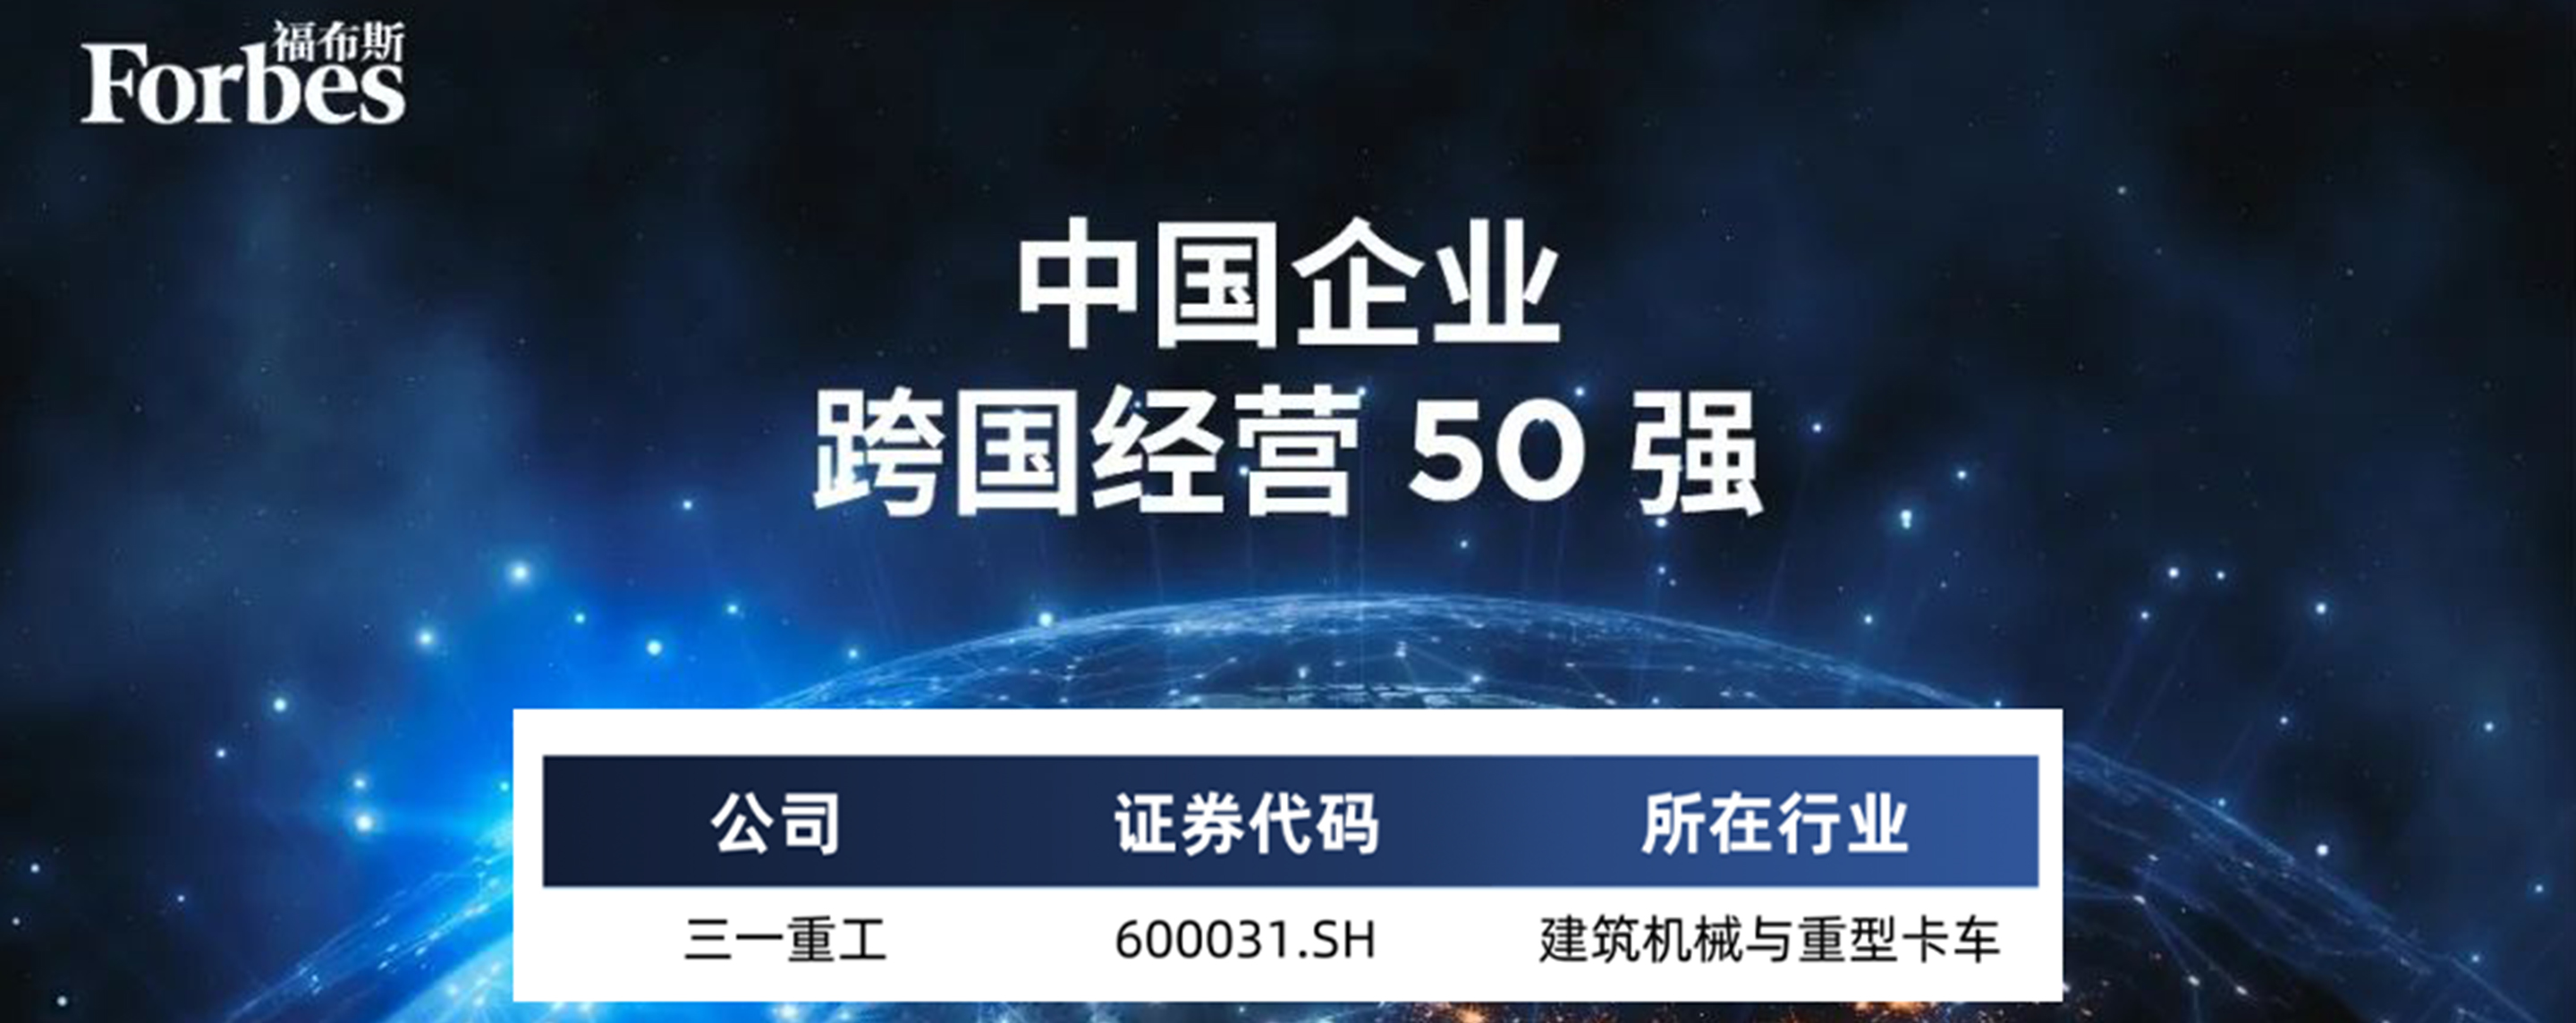 三一重工上榜中国企业跨国经营50强